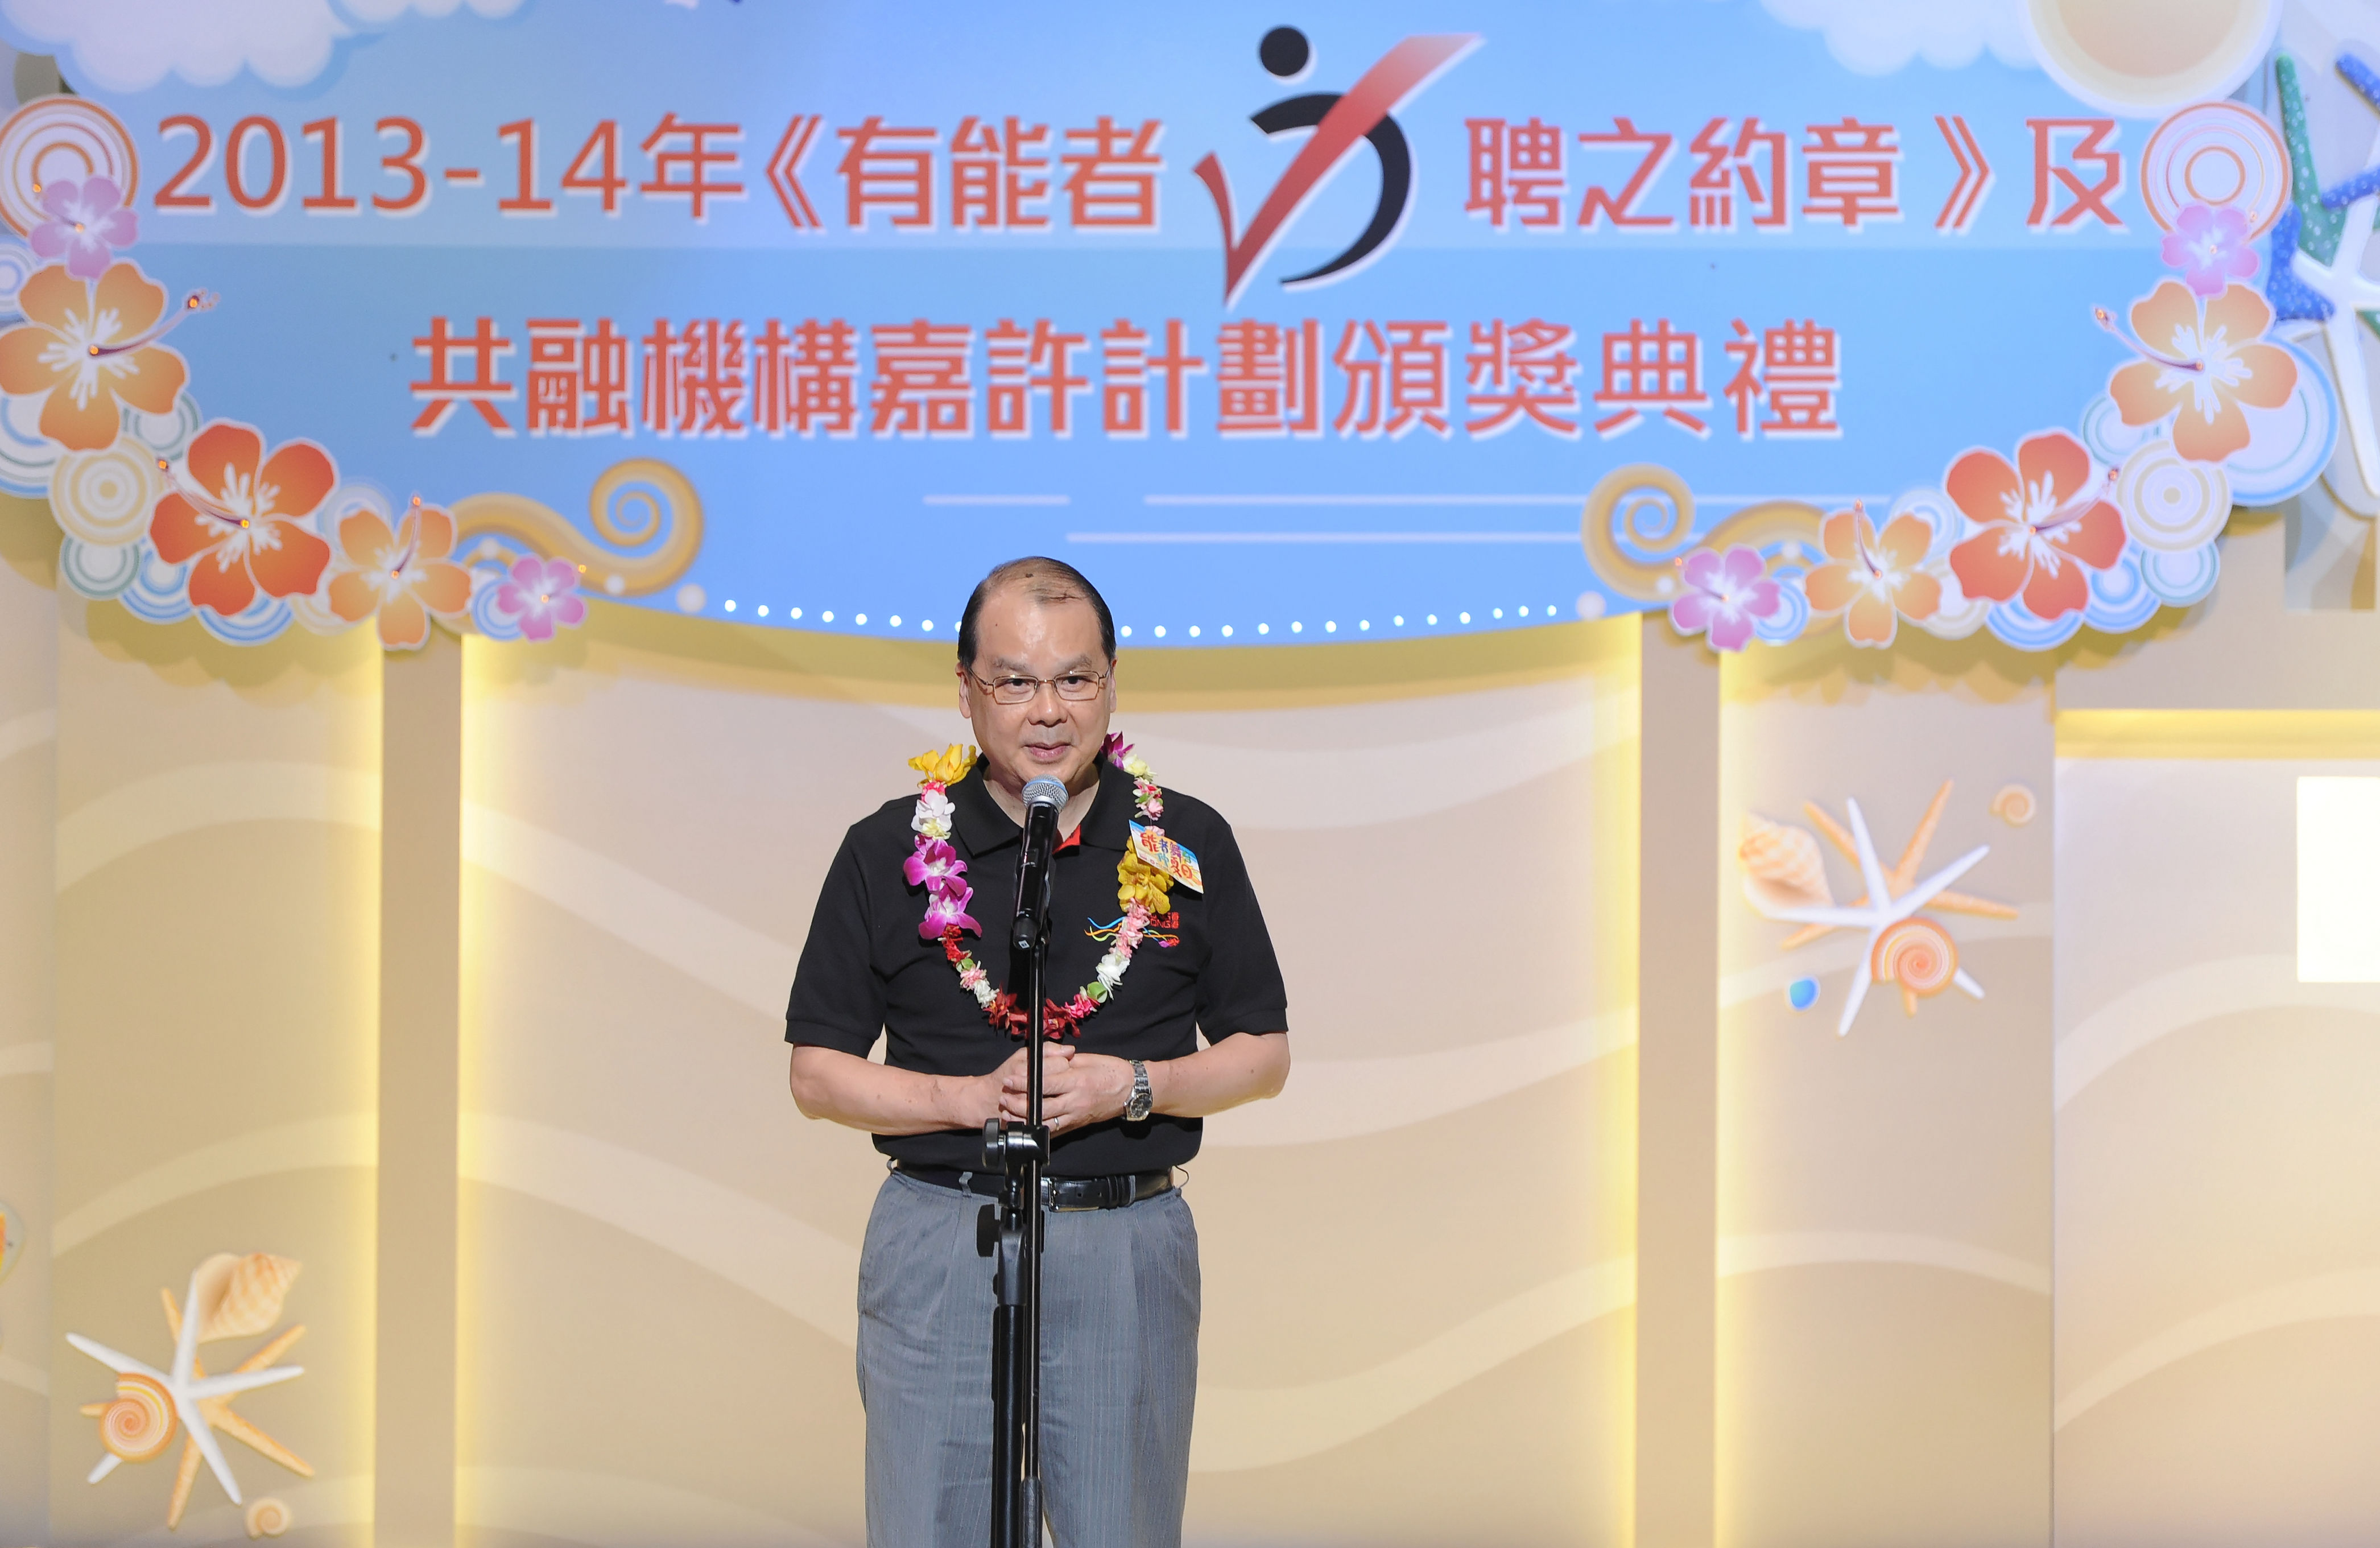 劳工及福利局局长张建宗先生, GBS, JP于2013-14年《约章》计划颁奖典礼上致辞